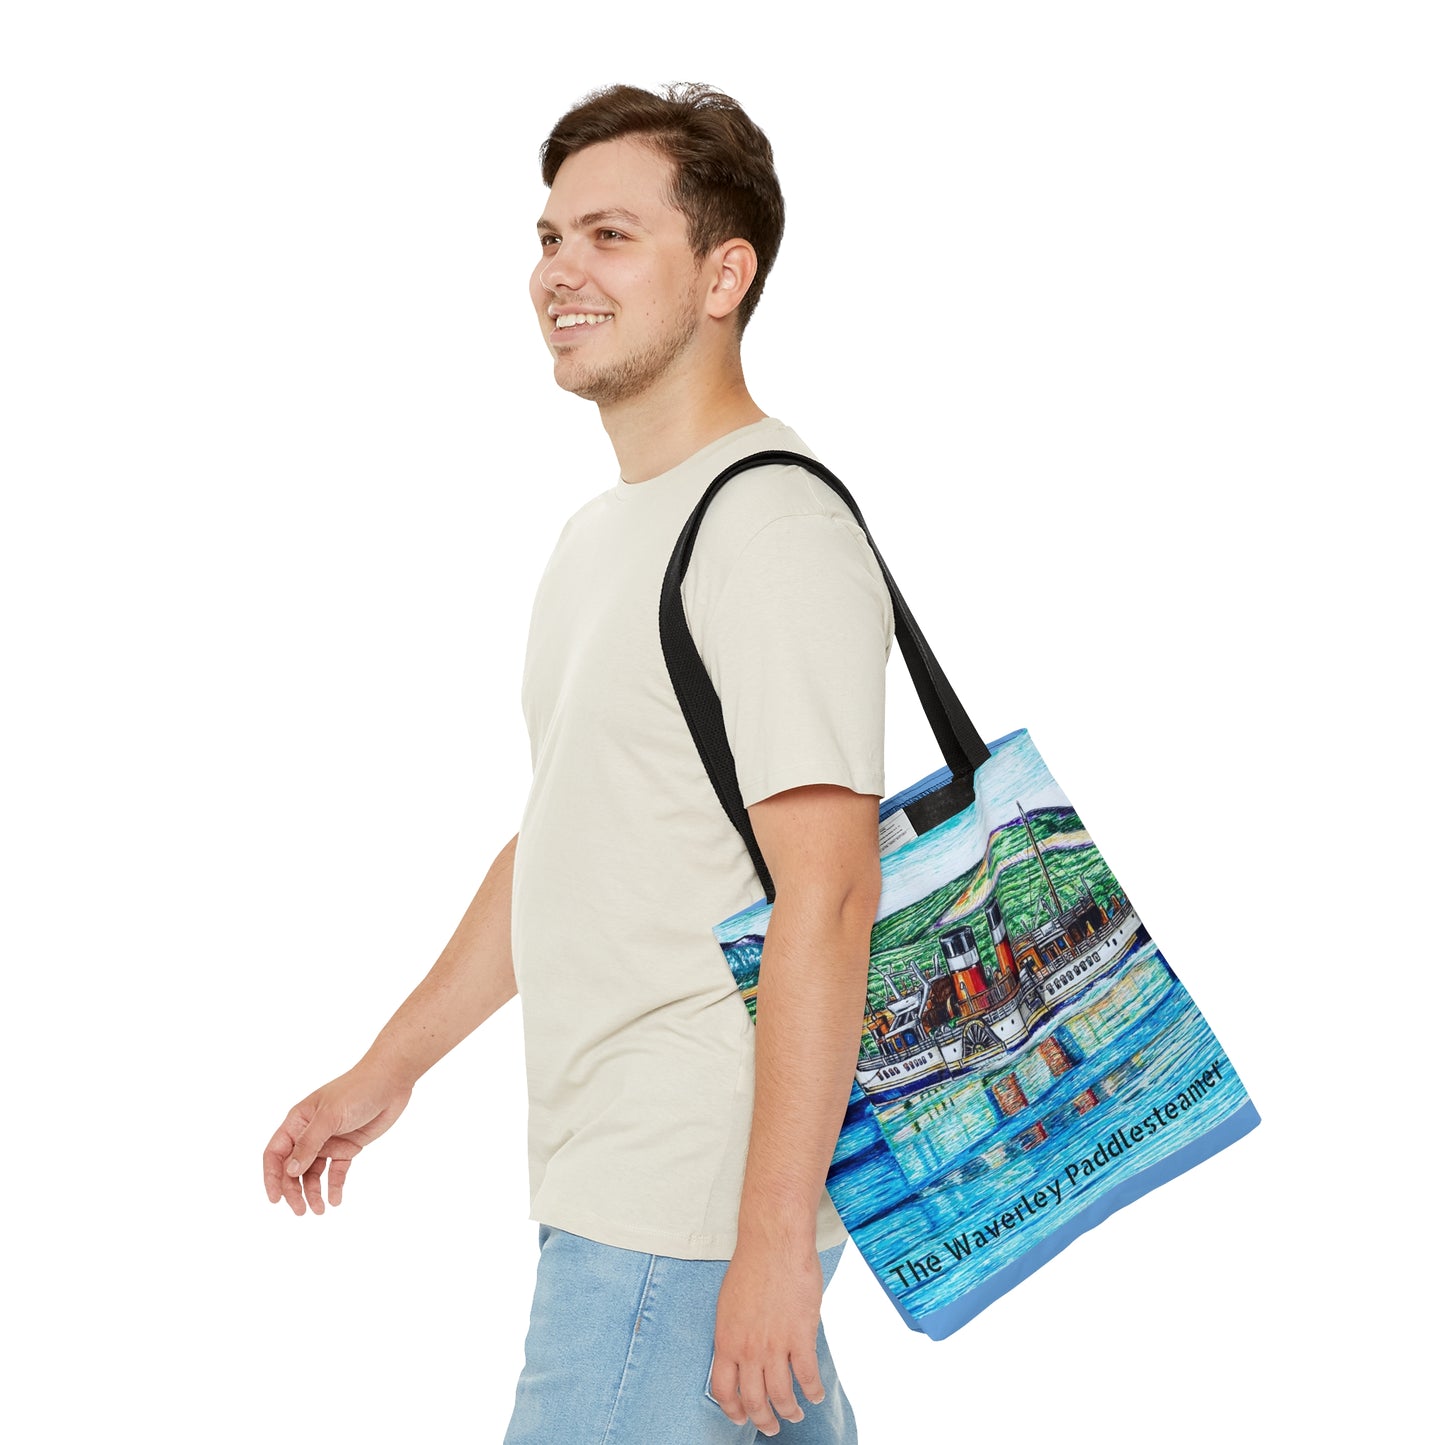 Tote Bag (AOP)- The Waverley Paddlesteamer Design